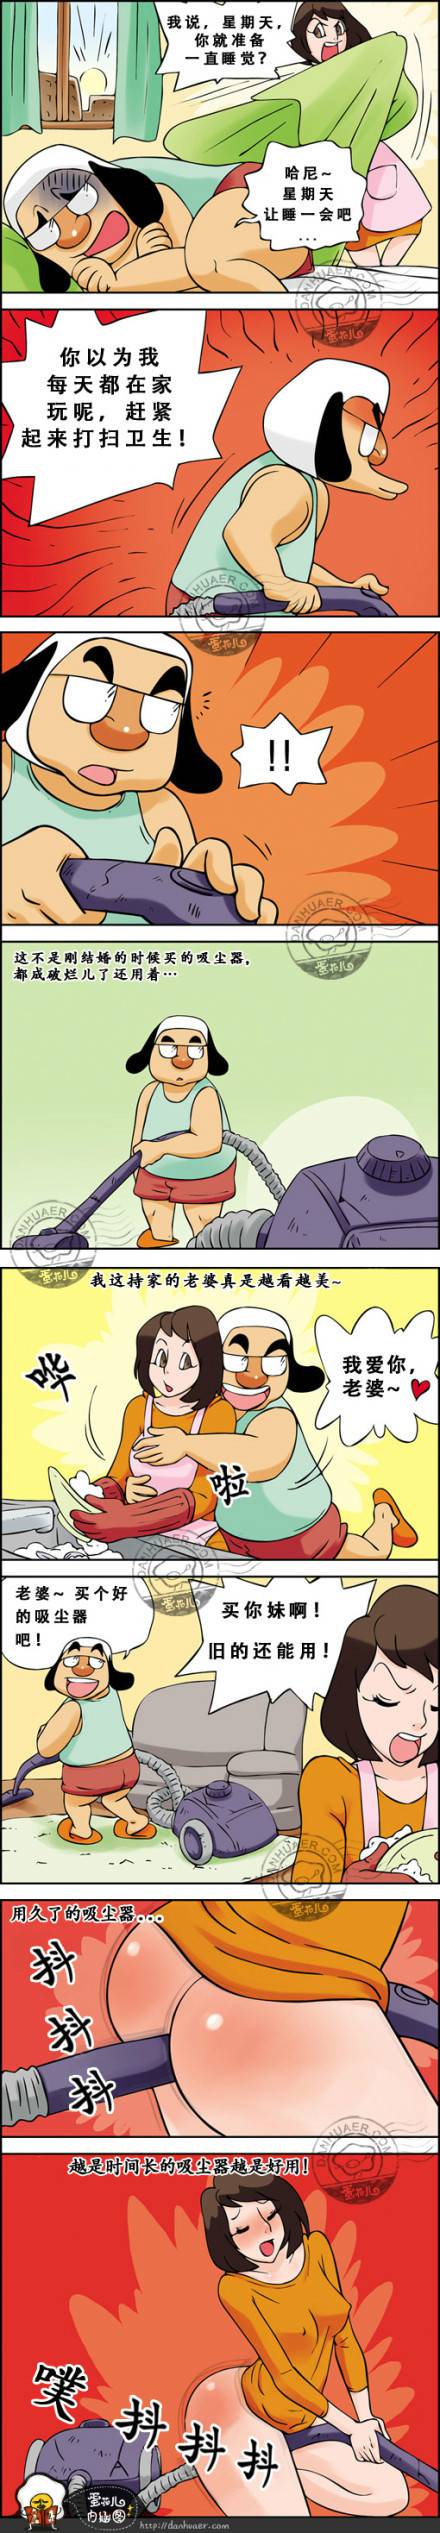 邪恶漫画爆笑囧图第229刊：吸尘器的另类功用